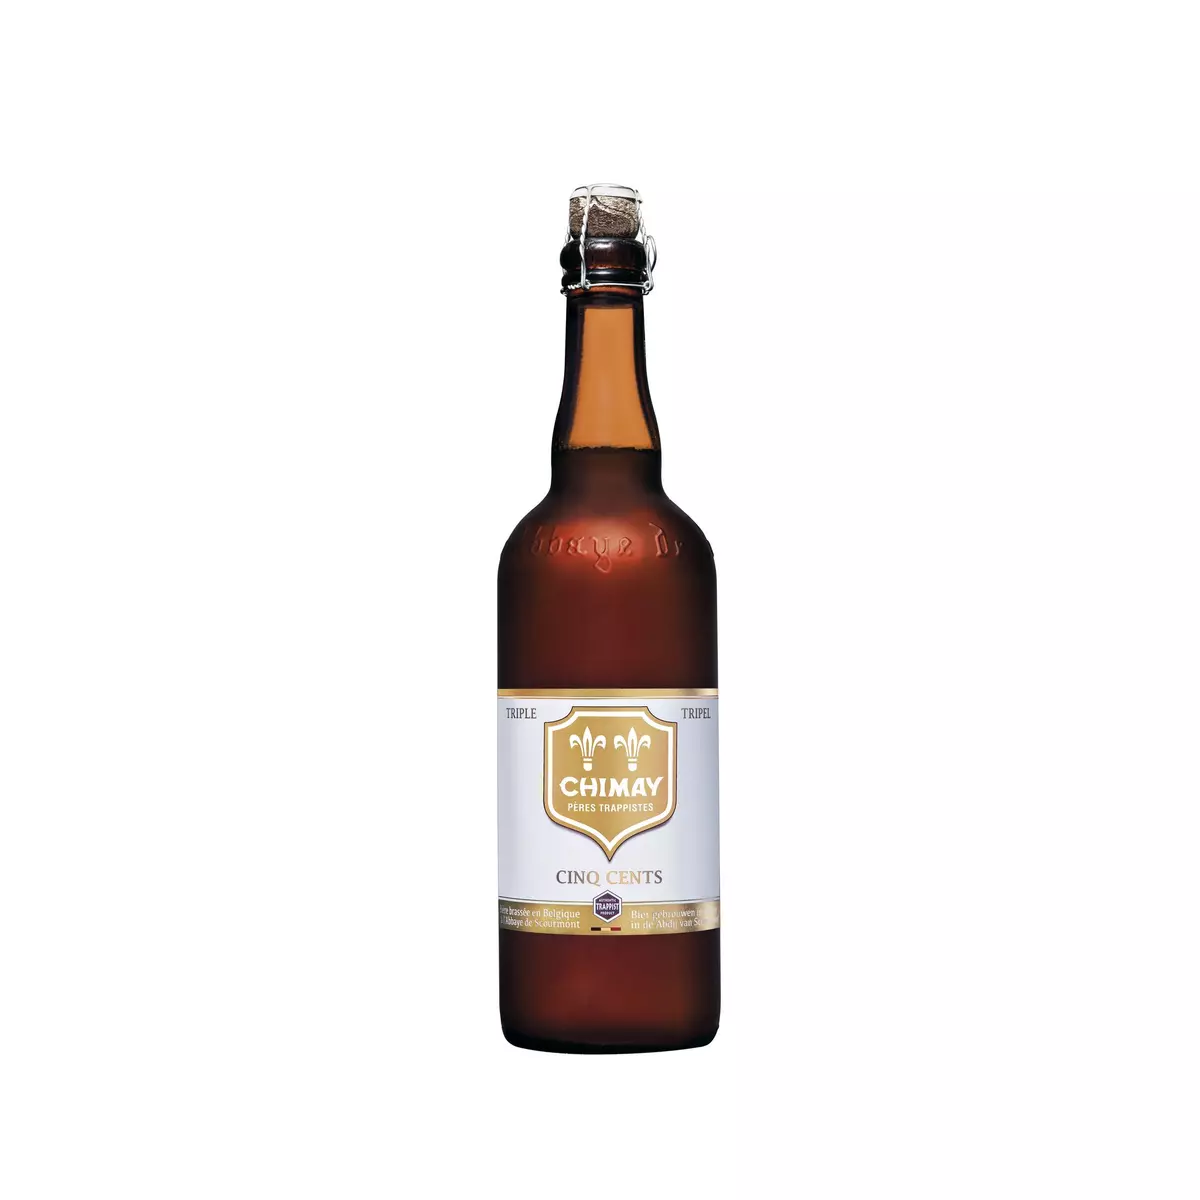 CHIMAY Bière blonde Cinq Cents 8% 75cl